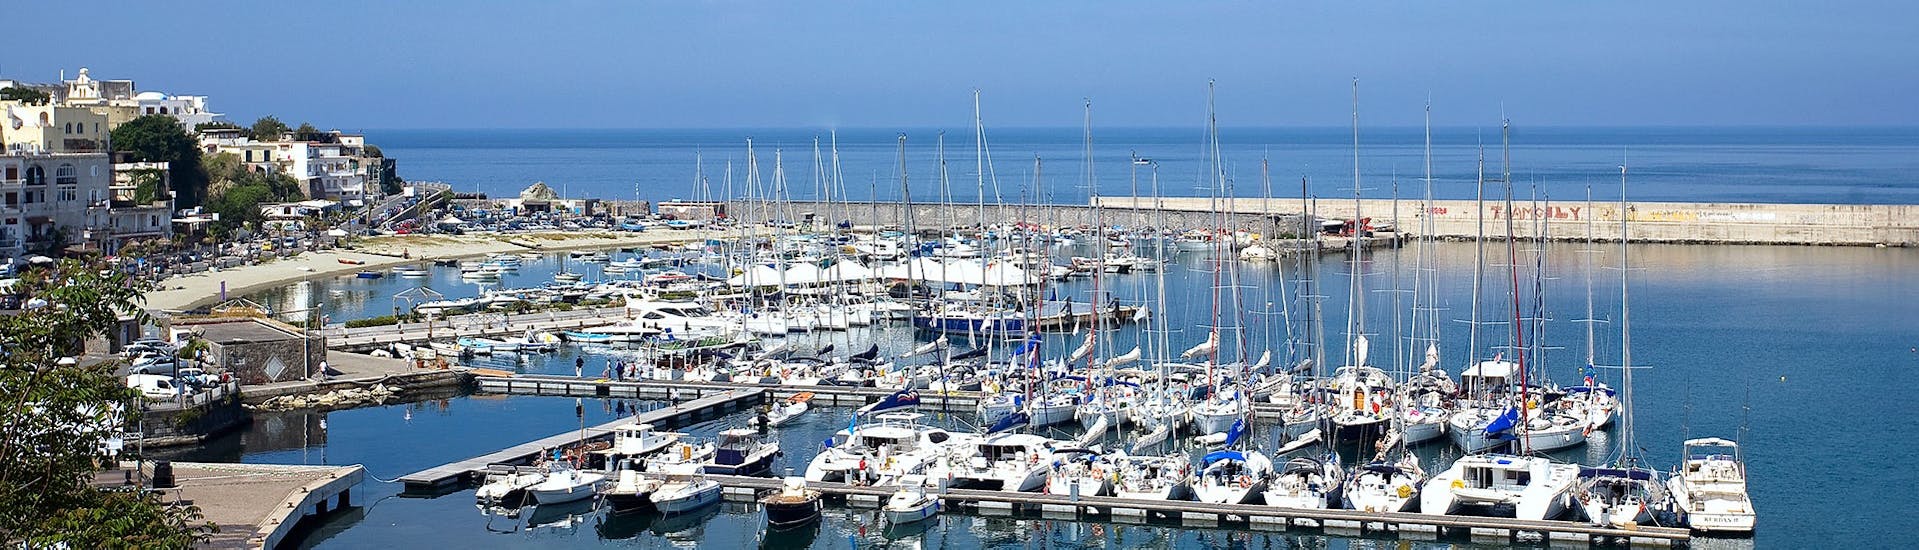 Der Hafen von Forio, den wir während der Bootstour um Ischia mit Schwimmstopps und Mittagessen mit Alcione Boat sehen werden.